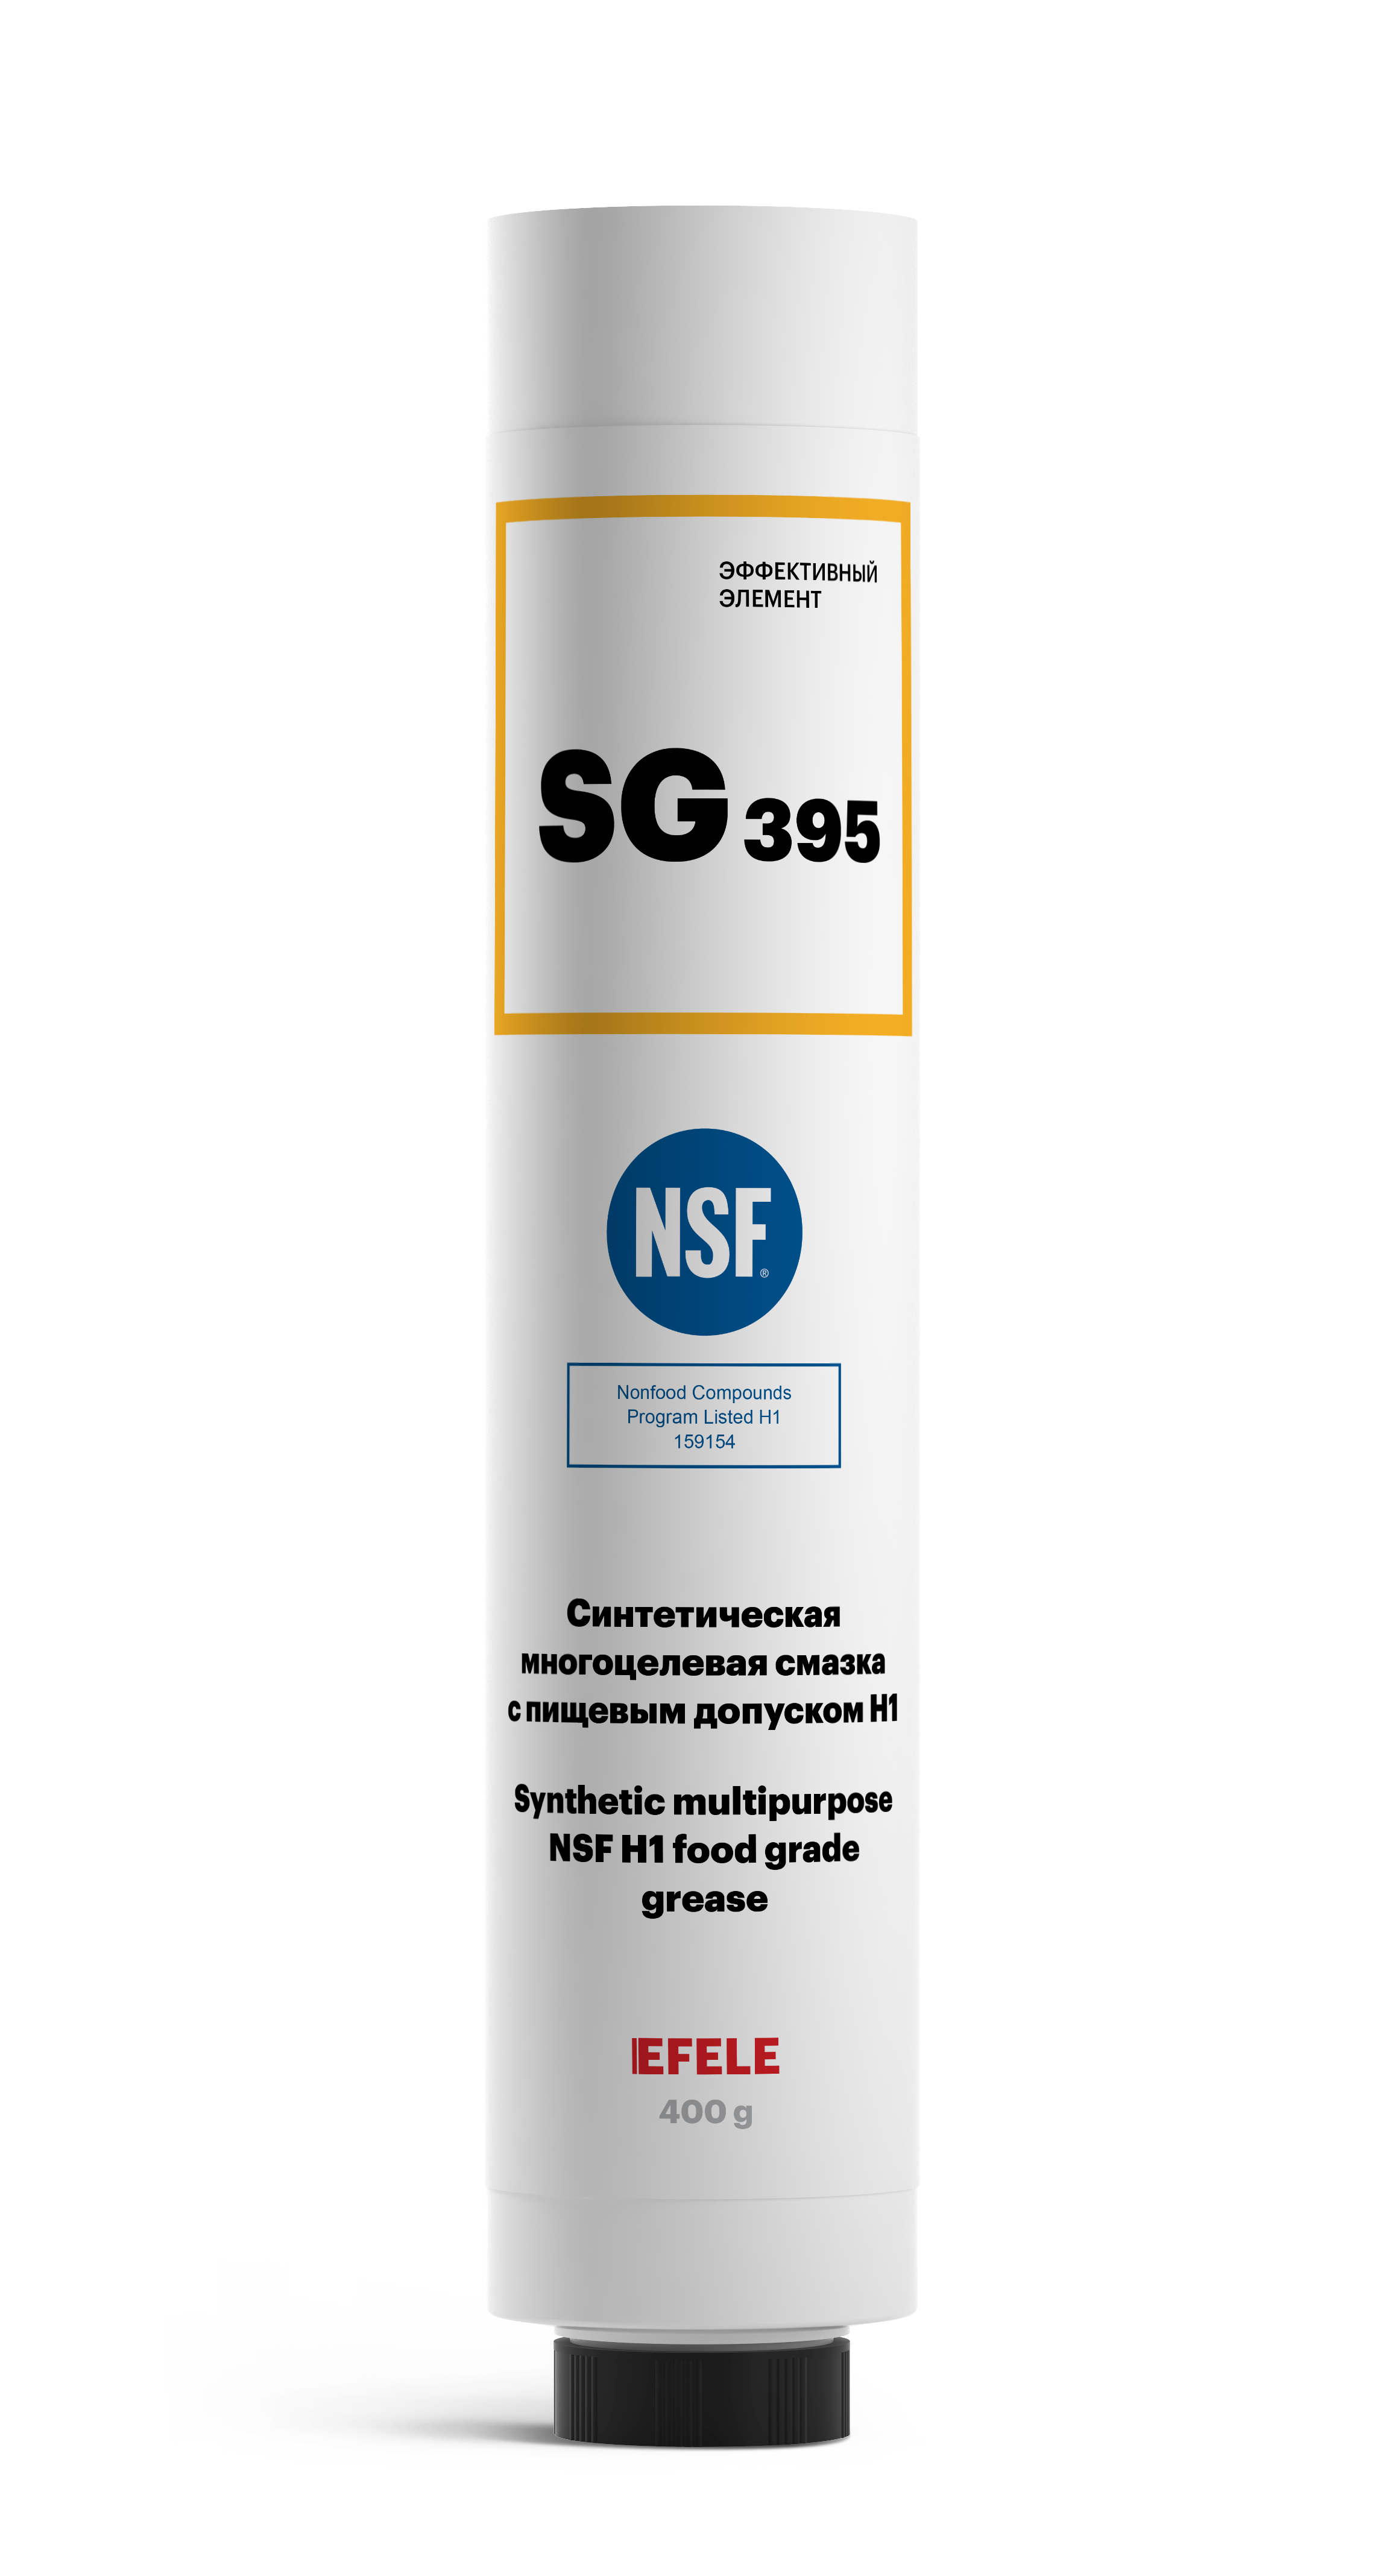 Многоцелевая смазка EFELE SG-395 с пищевым допуском Н1 картридж LUBE-SHUTTLE 400 г